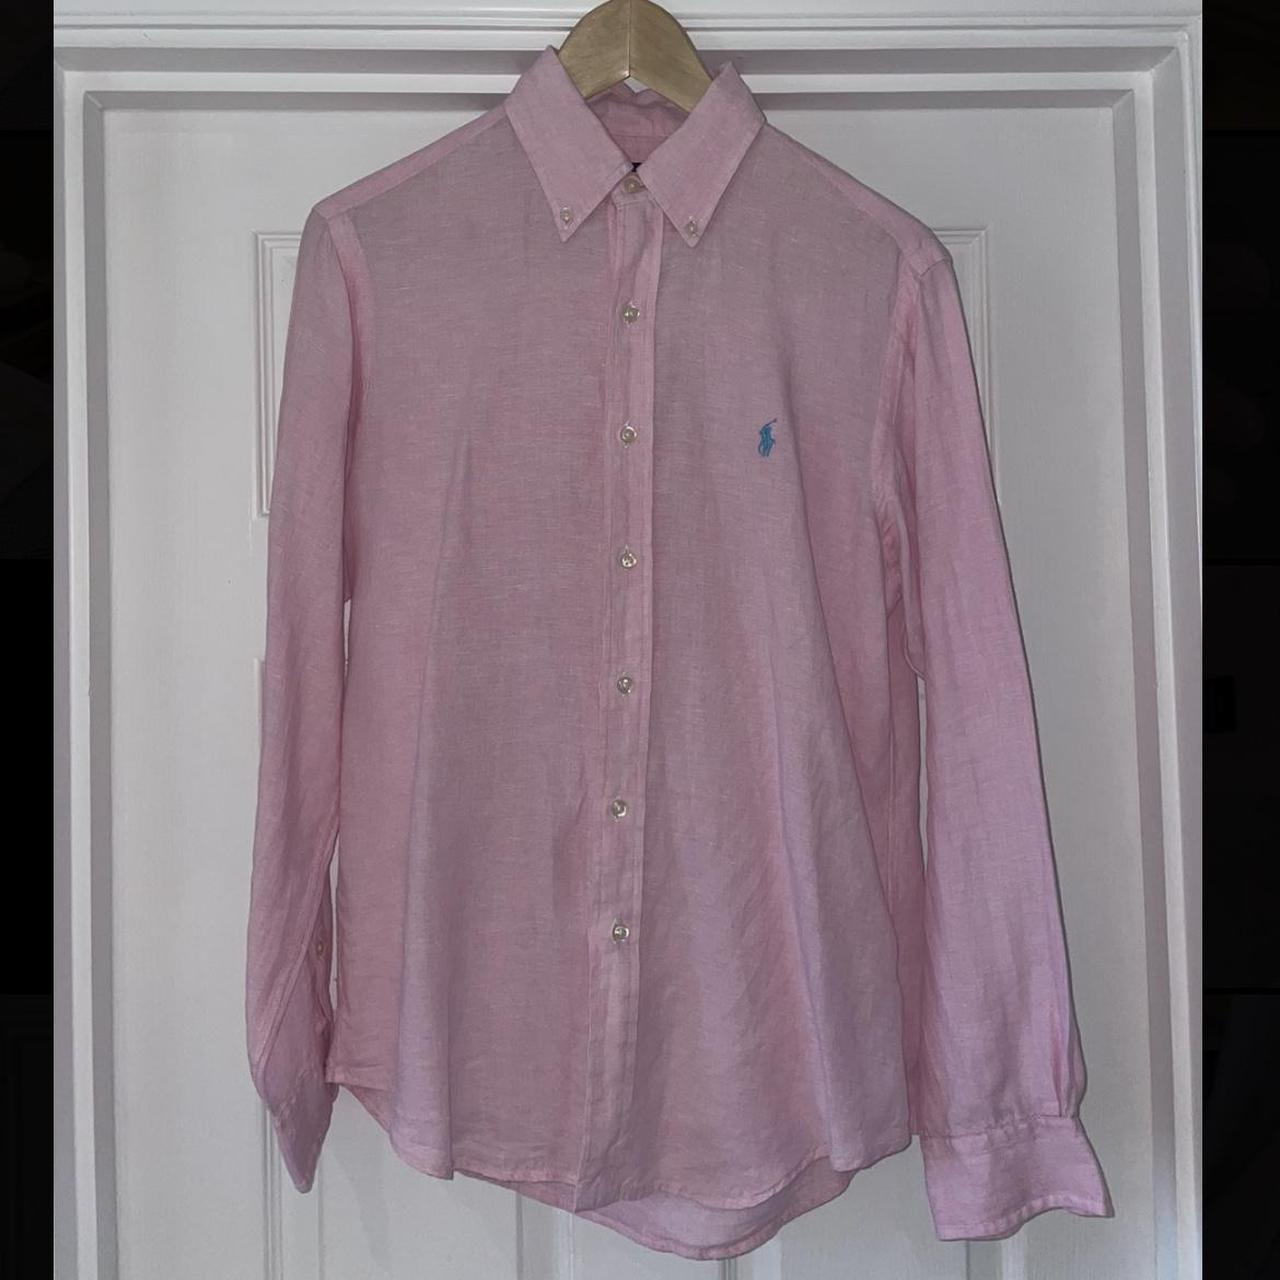 Ralph Lauren Pink Linen Shirt Men’s XS Extrq Small... - Depop